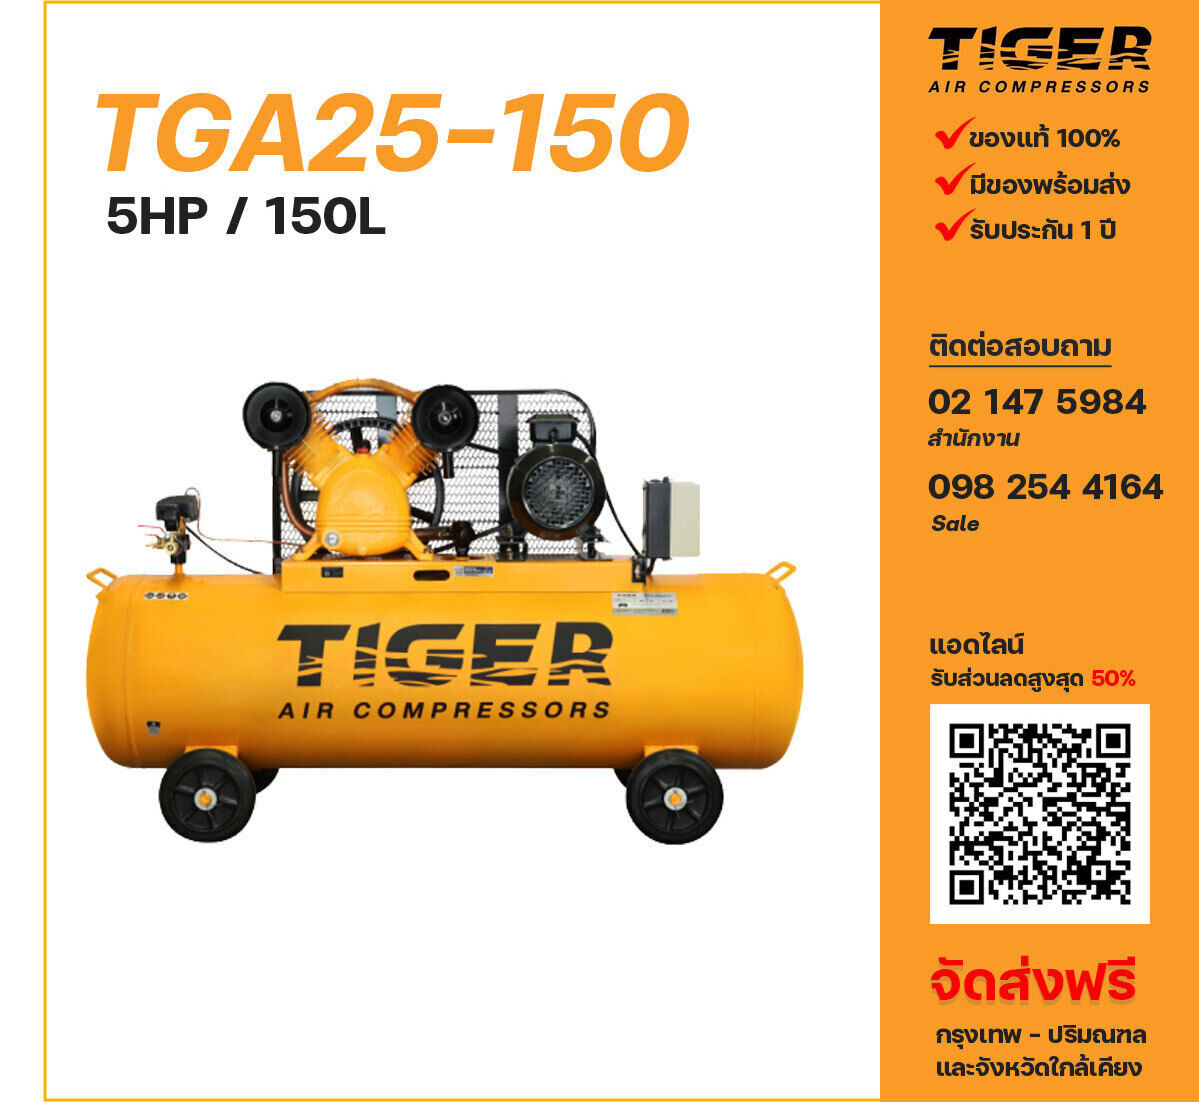 ปั๊มลมไทเกอร์ TIGER TGA25-150 380V ปั๊มลมลูกสูบ ขนาด 2 สูบ 5 แรงม้า 150 ลิตร TIGER พร้อมมอเตอร์ ไฟ 380V ส่งฟรี กรุงเทพฯ-ปริมณฑล รับประกัน 1 ปี